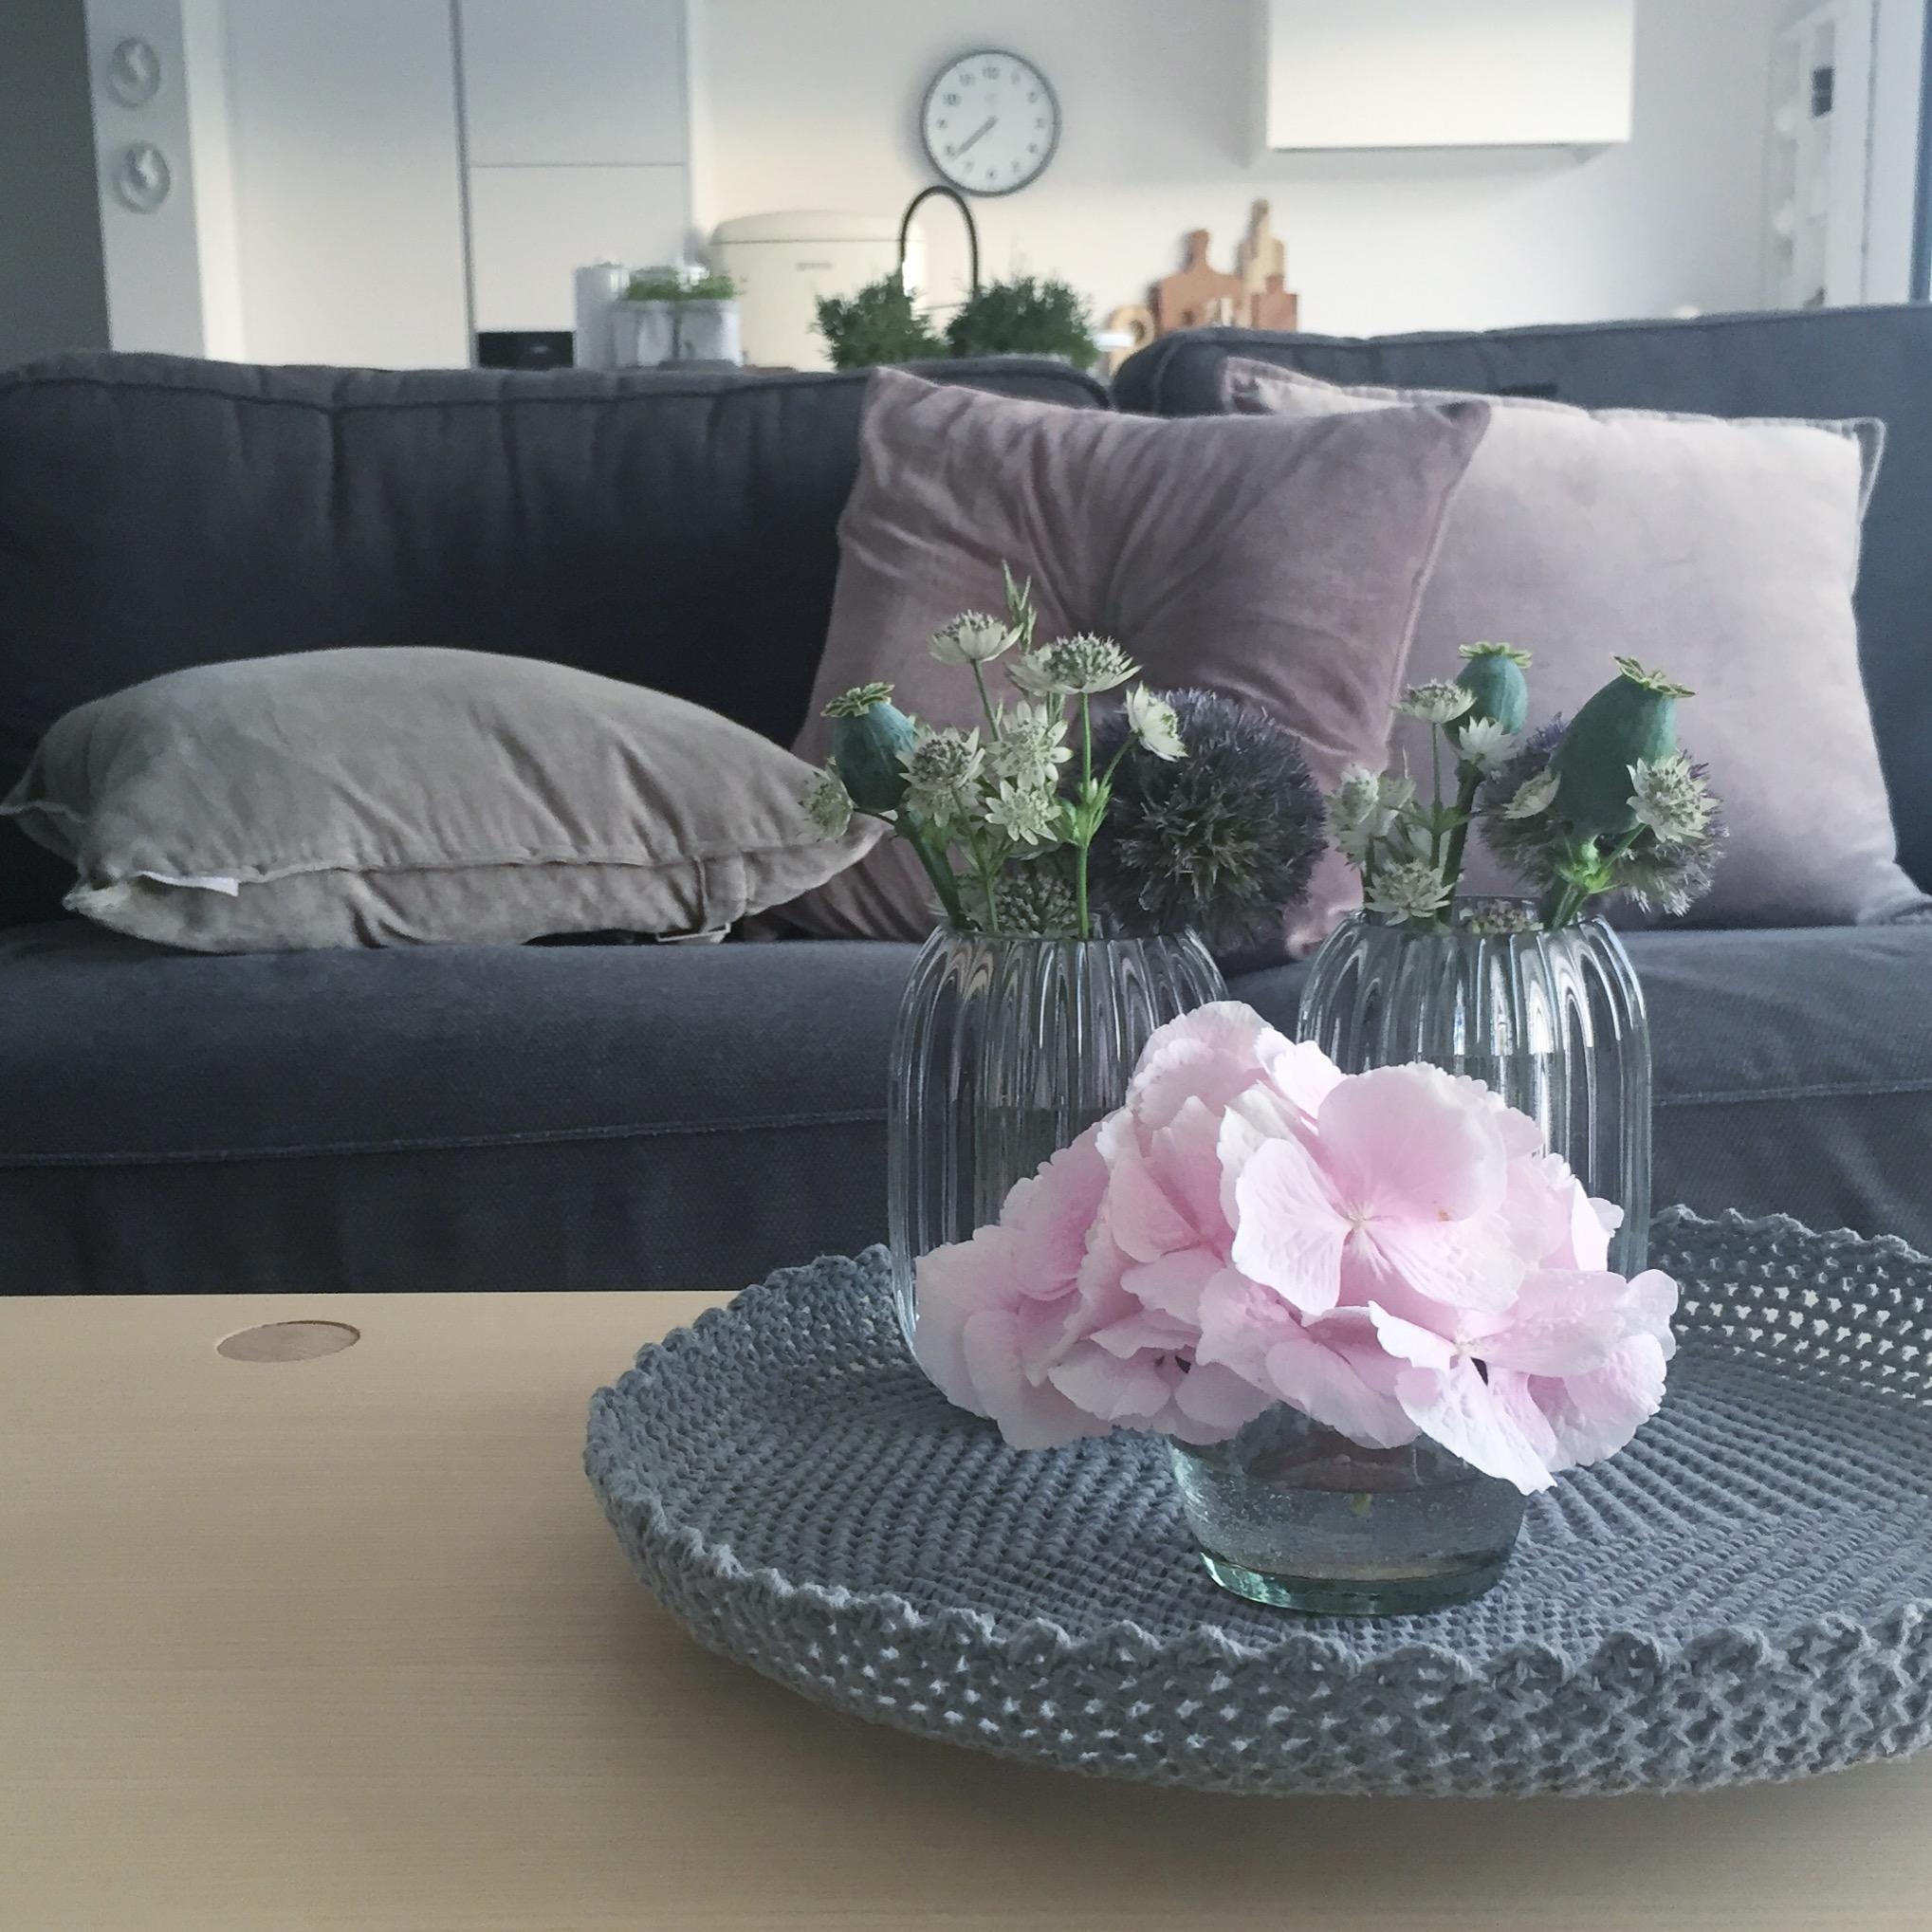 Couch 🛋 #couchview #kissen #vasen #blumen #freshflowers #hortensien #hygge #couchstyle #wohnzimmer